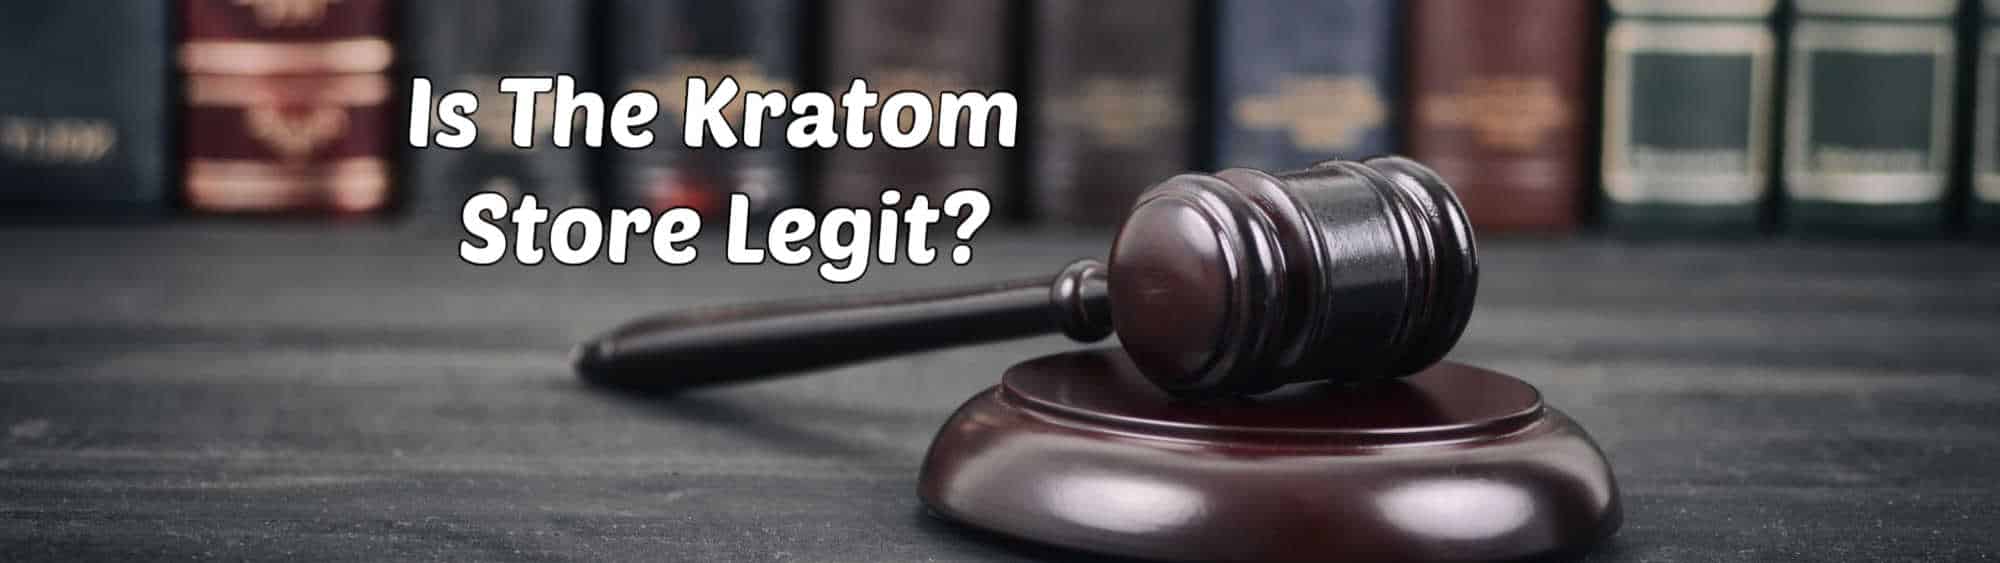 image of is kratom store legit